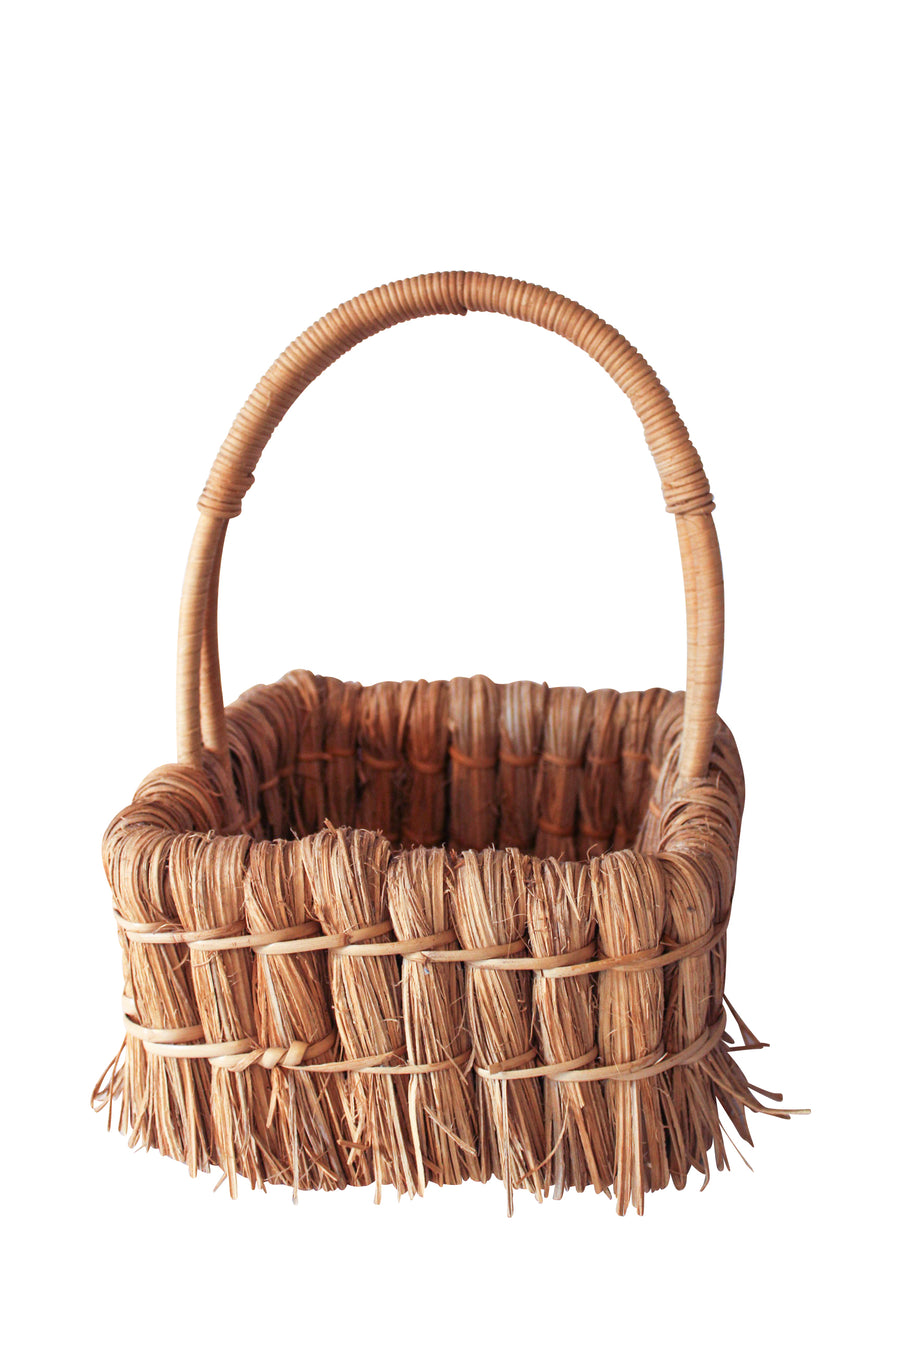 Straw Basket